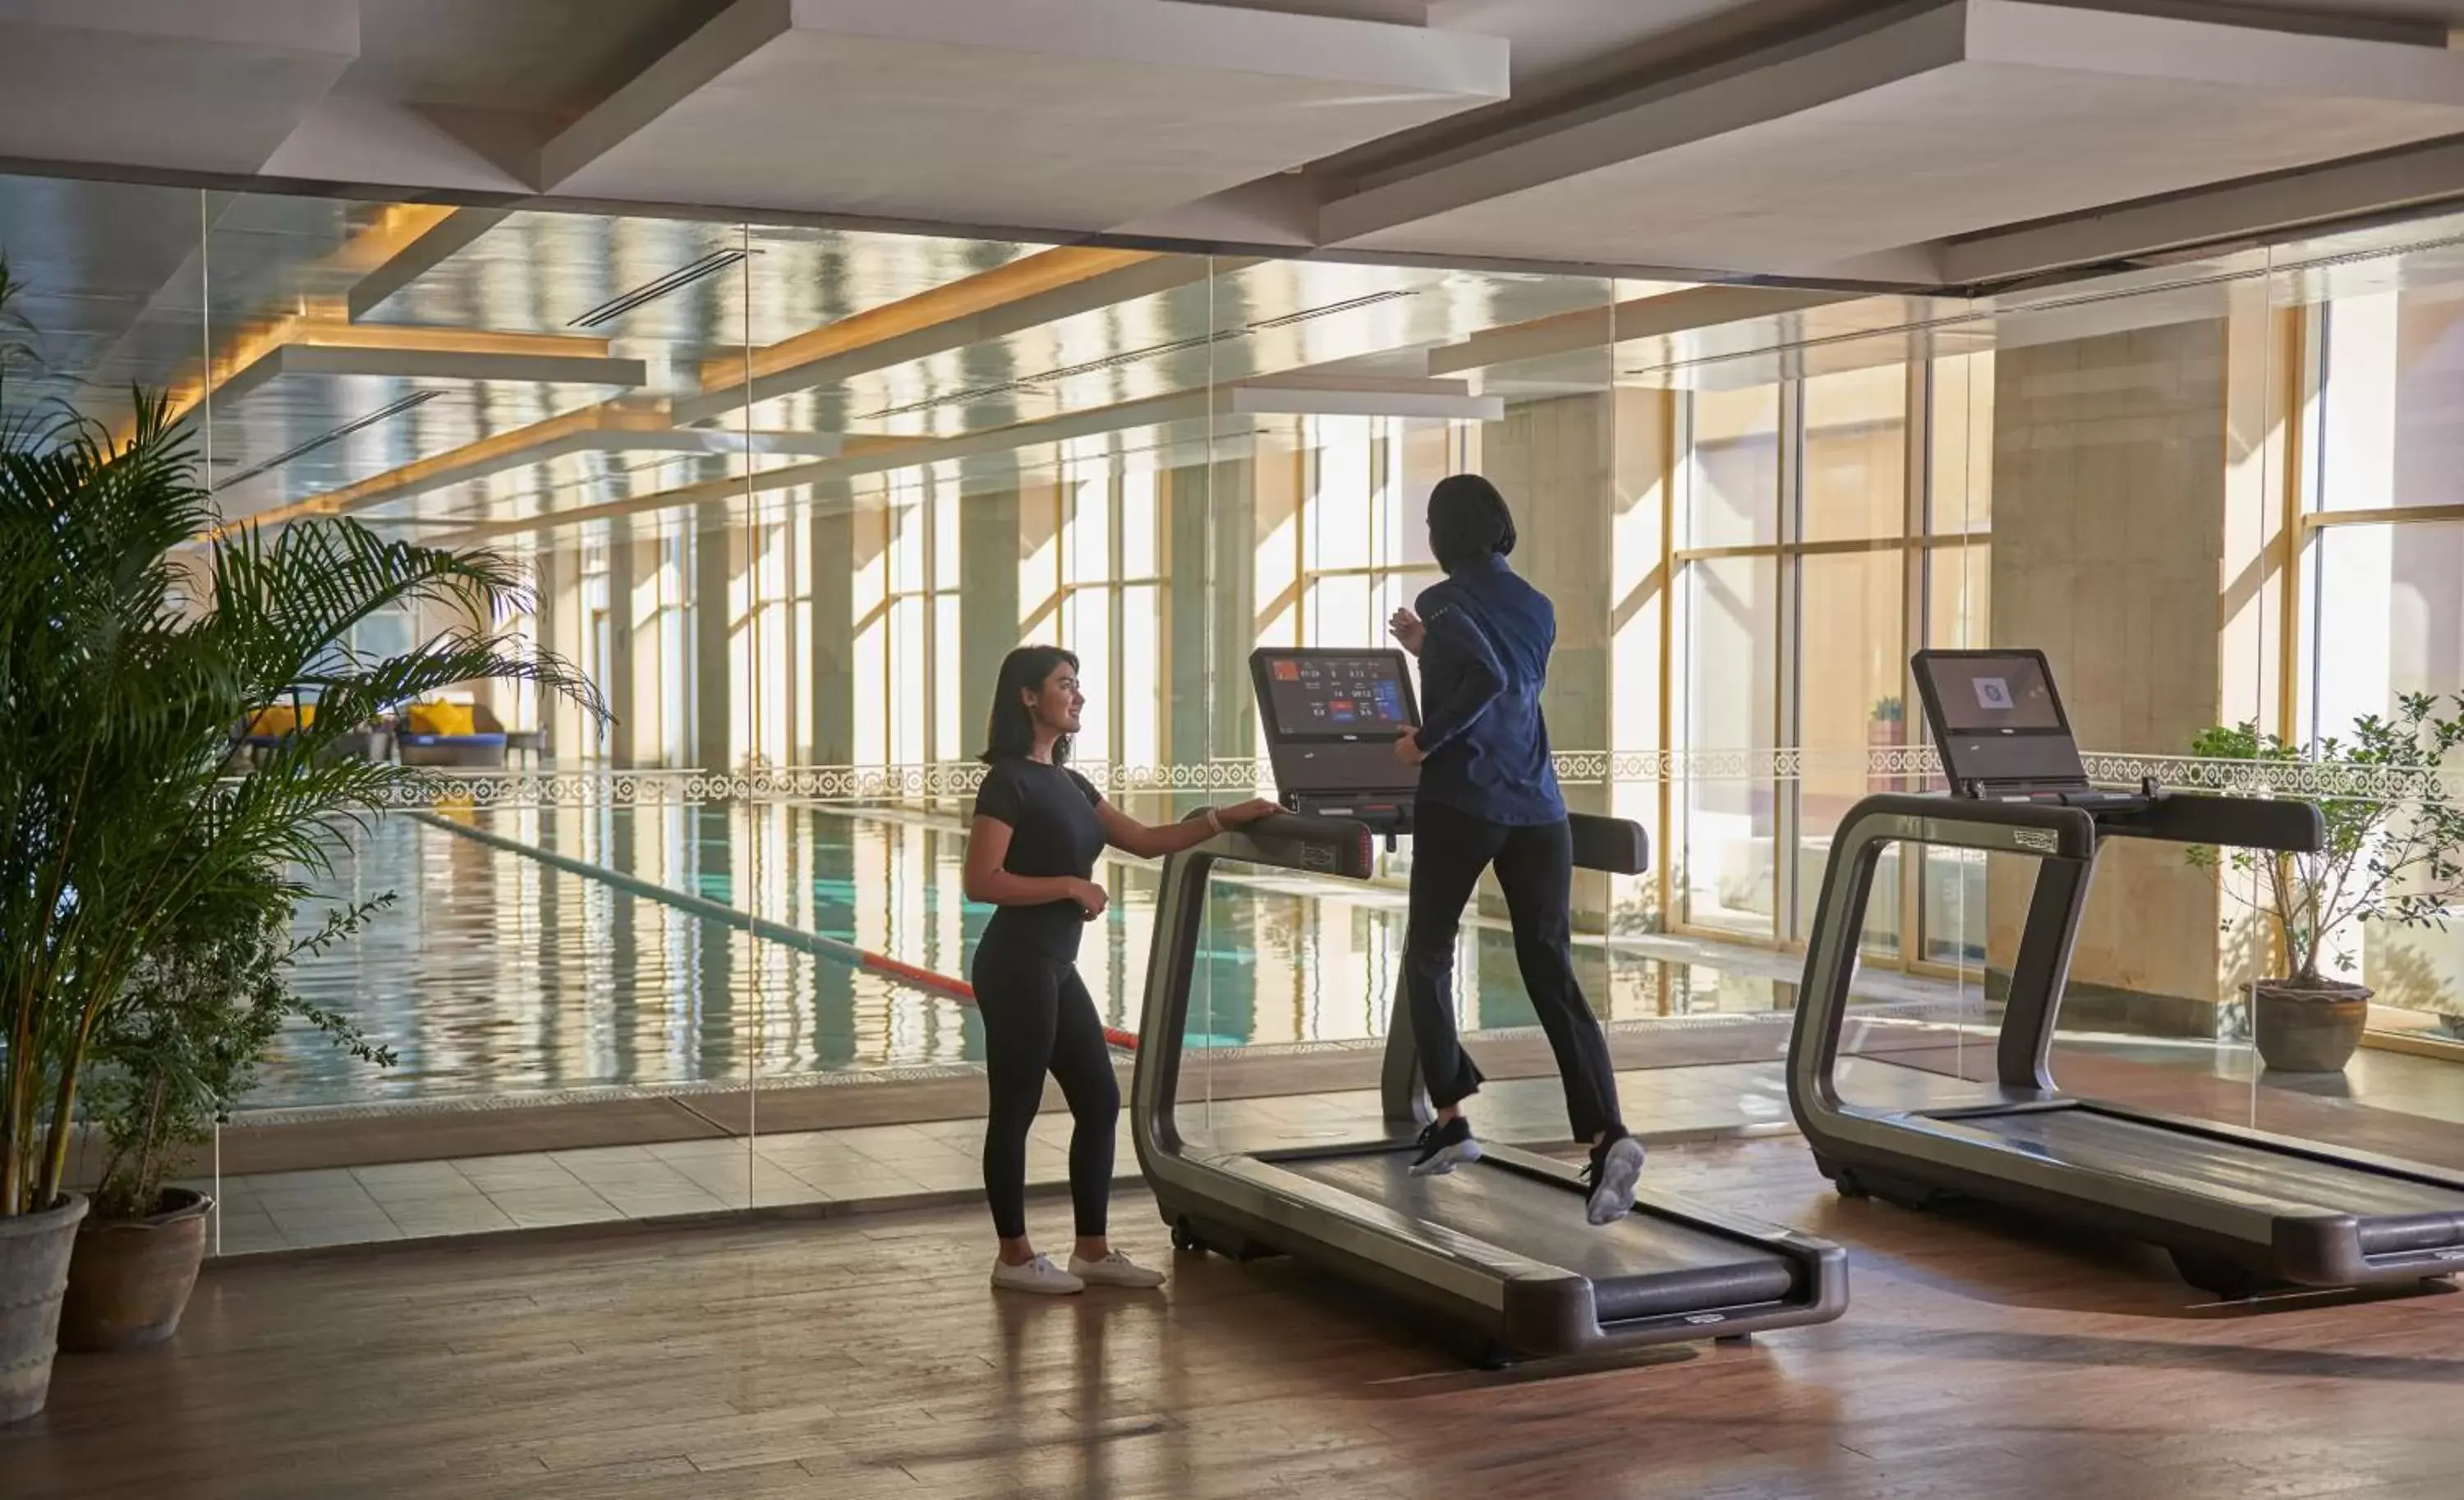 Fitness centre/facilities, Fitness Center/Facilities in Grand Hyatt Doha Hotel & Villas